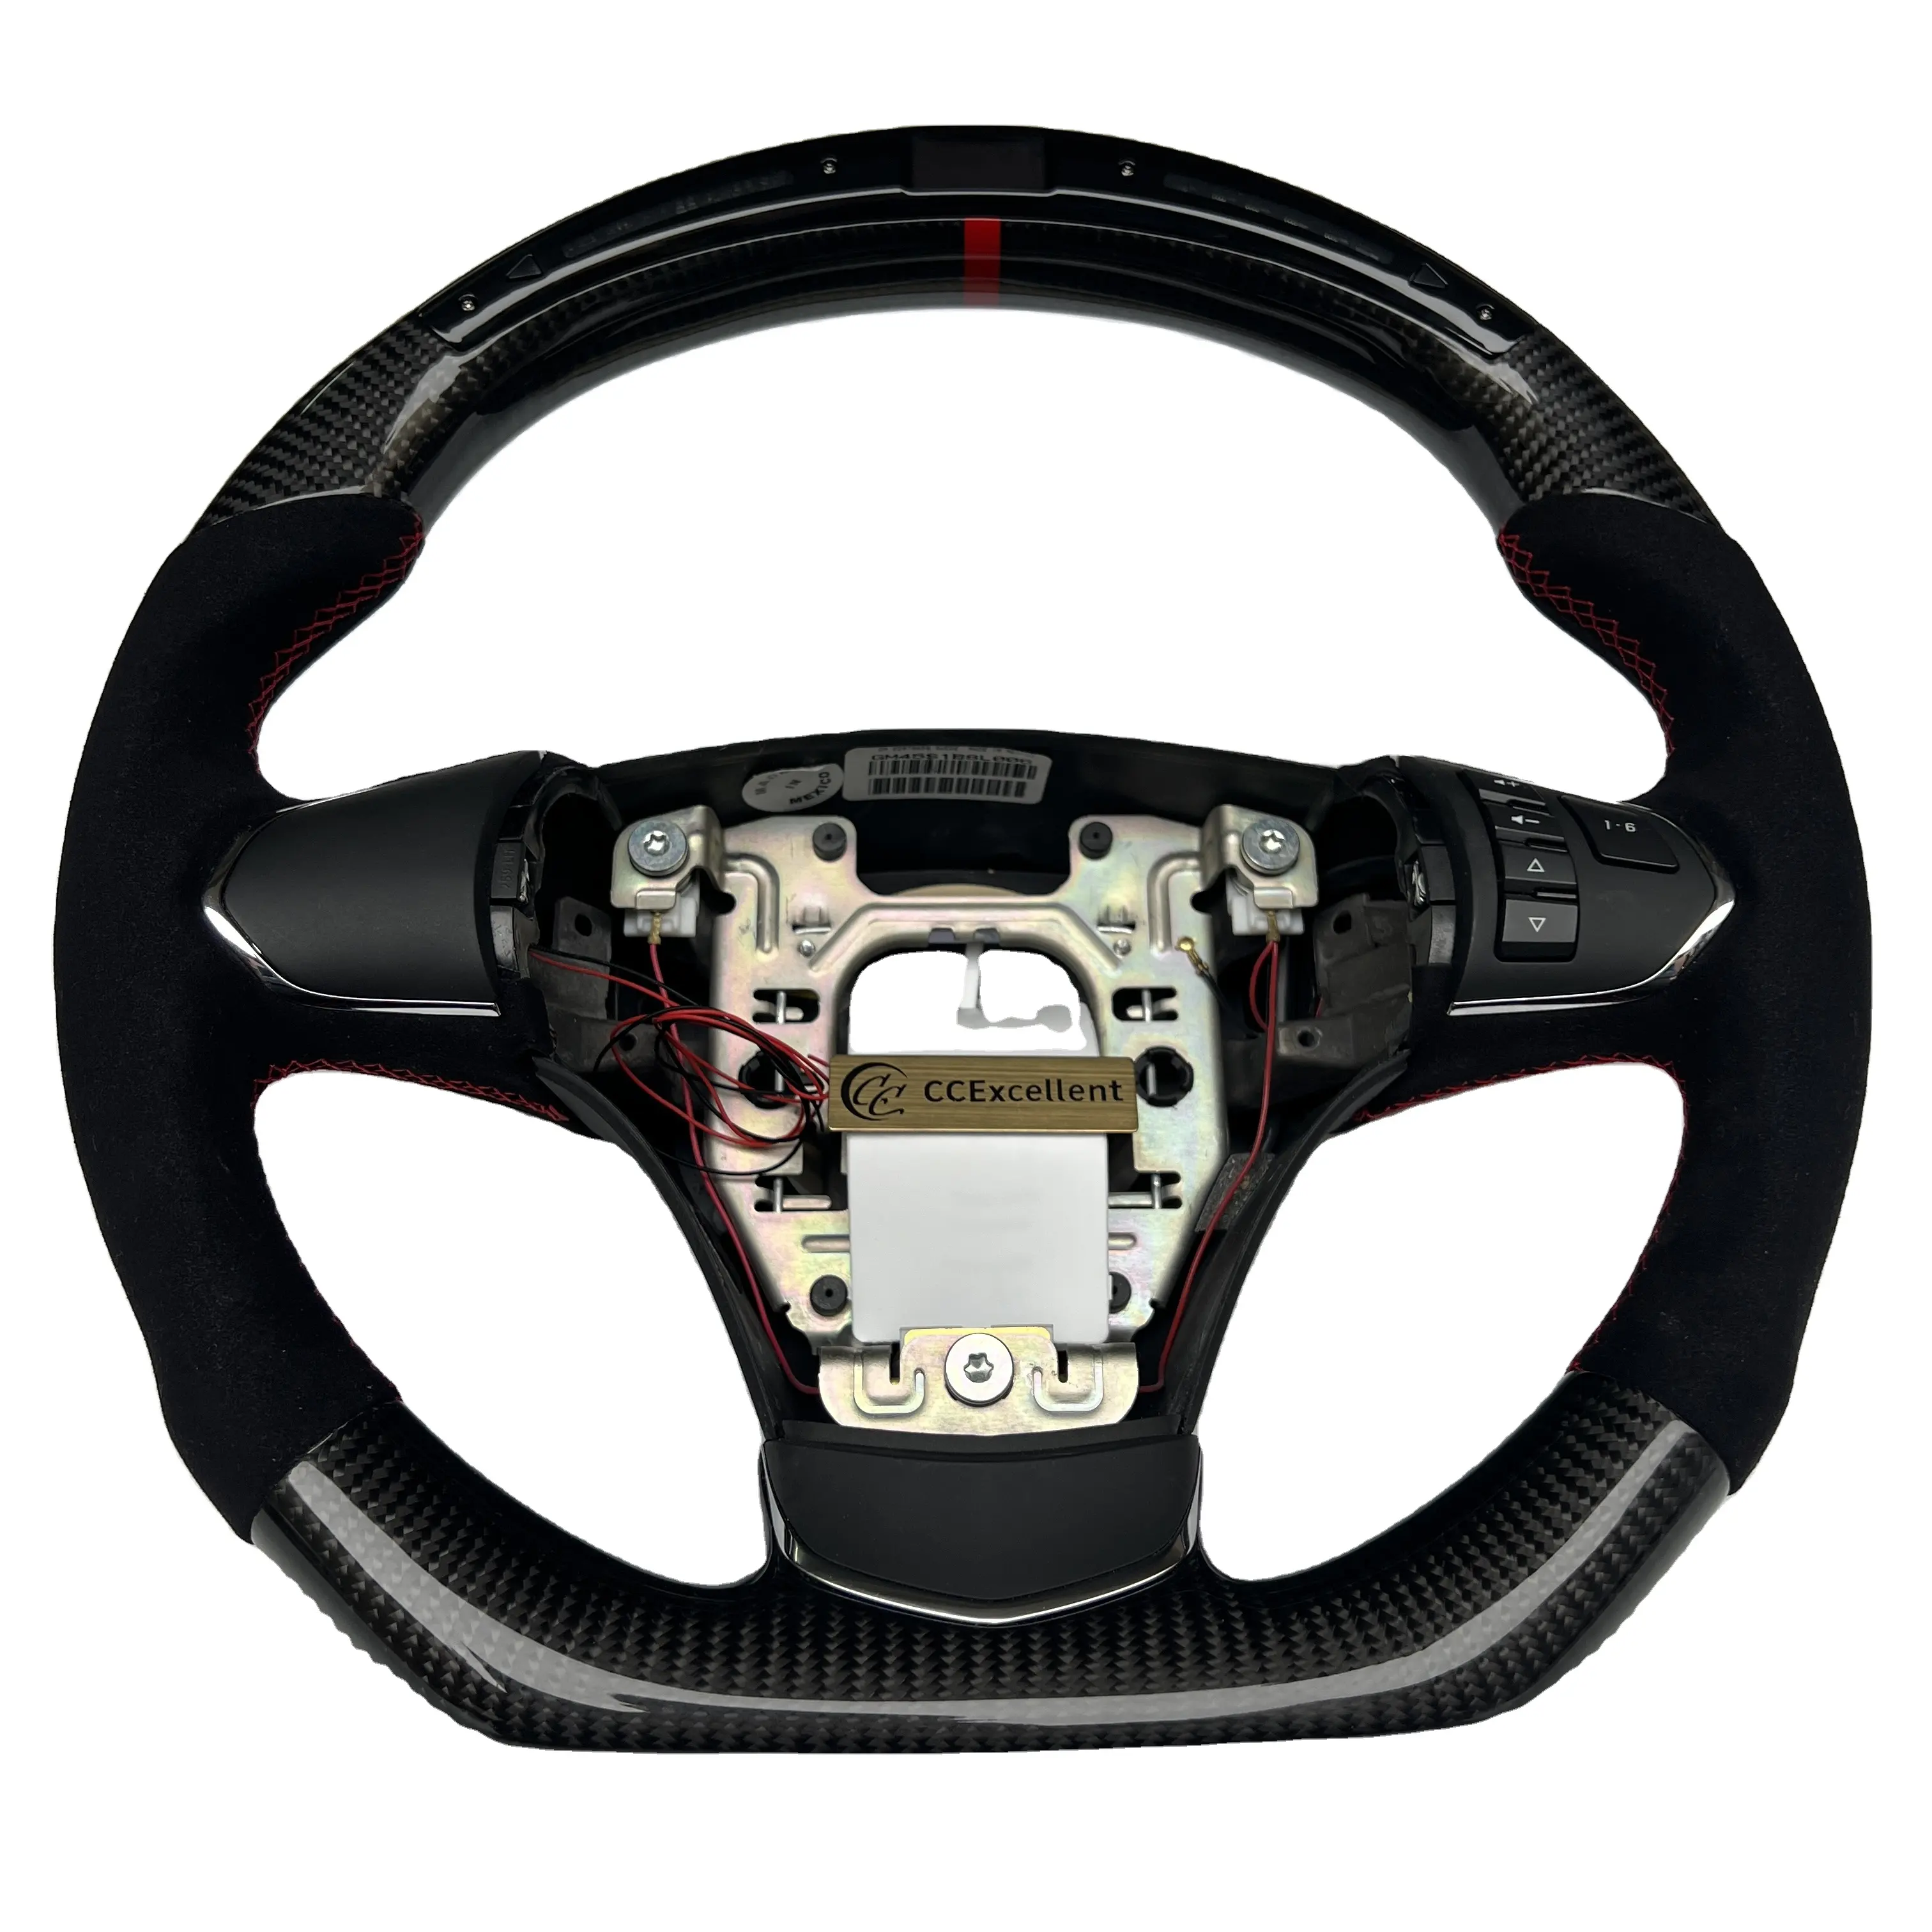 High quality carbon fiber steering wheel for Corvette C6 ZR1 Z06 steering wheel with LED light alcantara leather